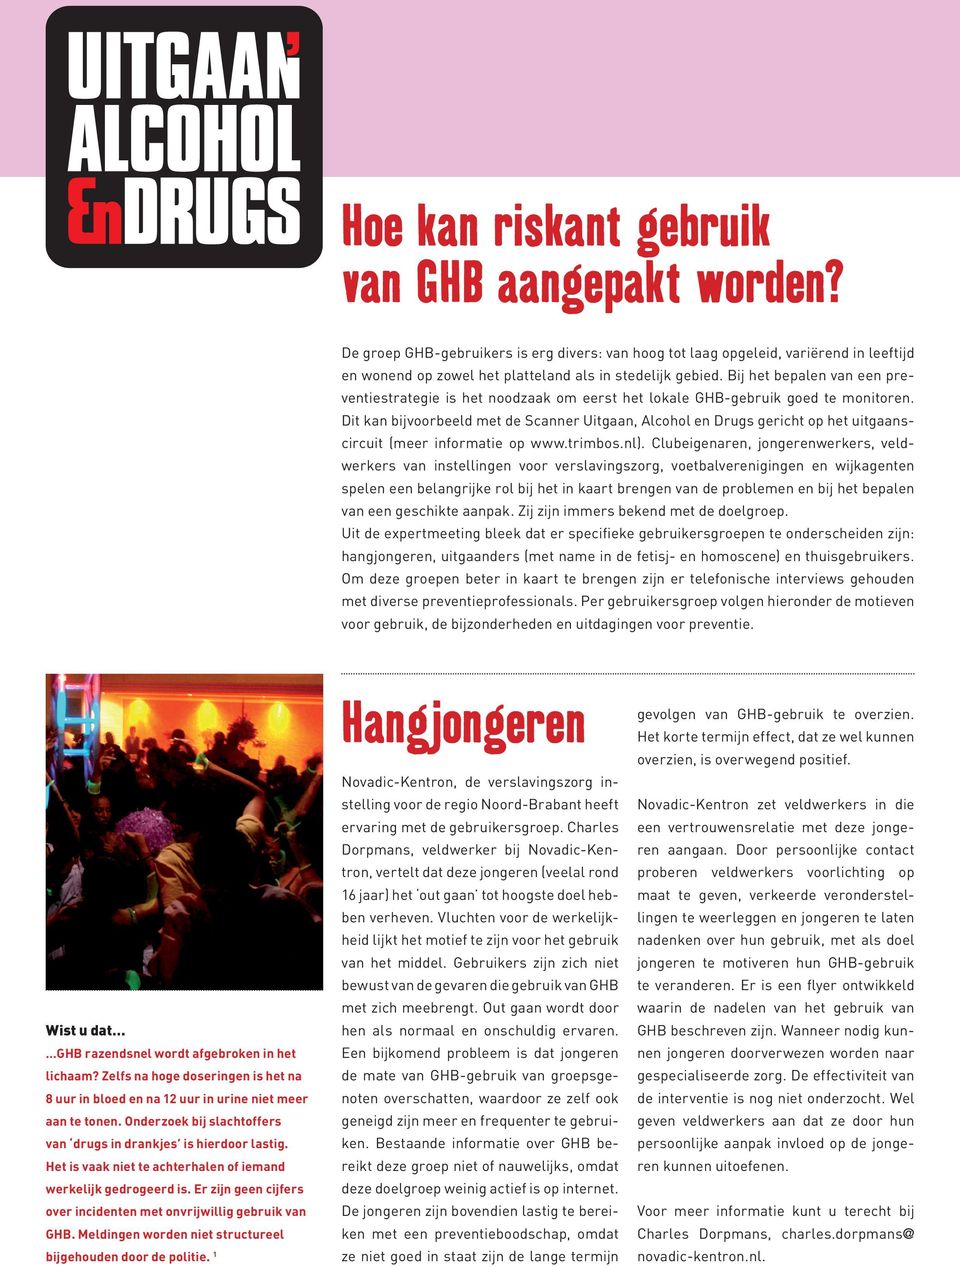 Dit kan bijvoorbeeld met de Scanner Uitgaan, Alcohol en Drugs gericht op het uitgaanscircuit (meer informatie op www.trimbos.nl).